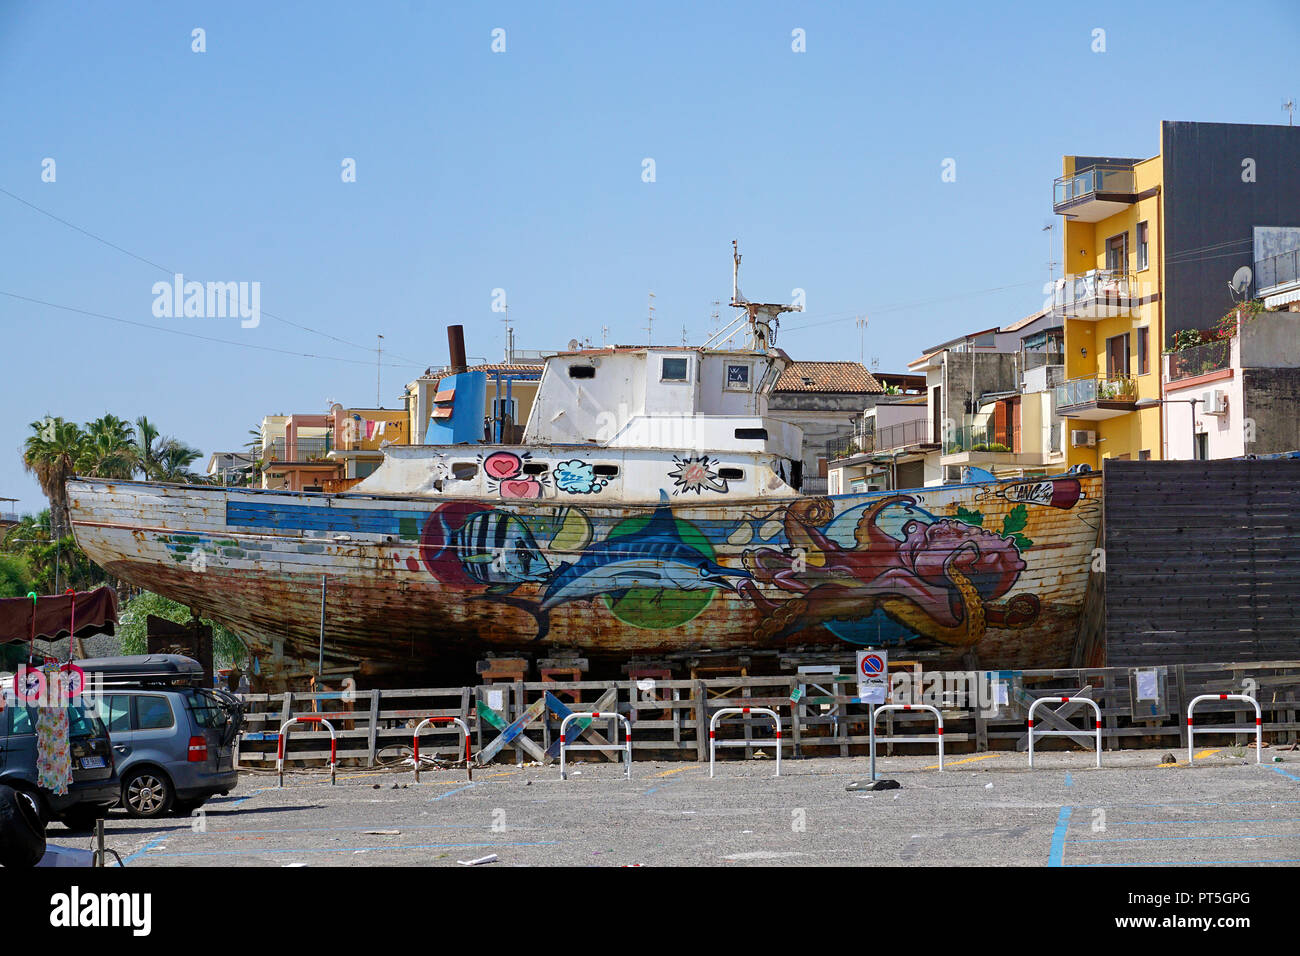 Alten Fischkutter mit Meerestieren Motive am Hafen von Fischerdorf Aci Trezza, Gemeinde Aci Castello, Catania, Sizilien, Italien lackiert Stockfoto